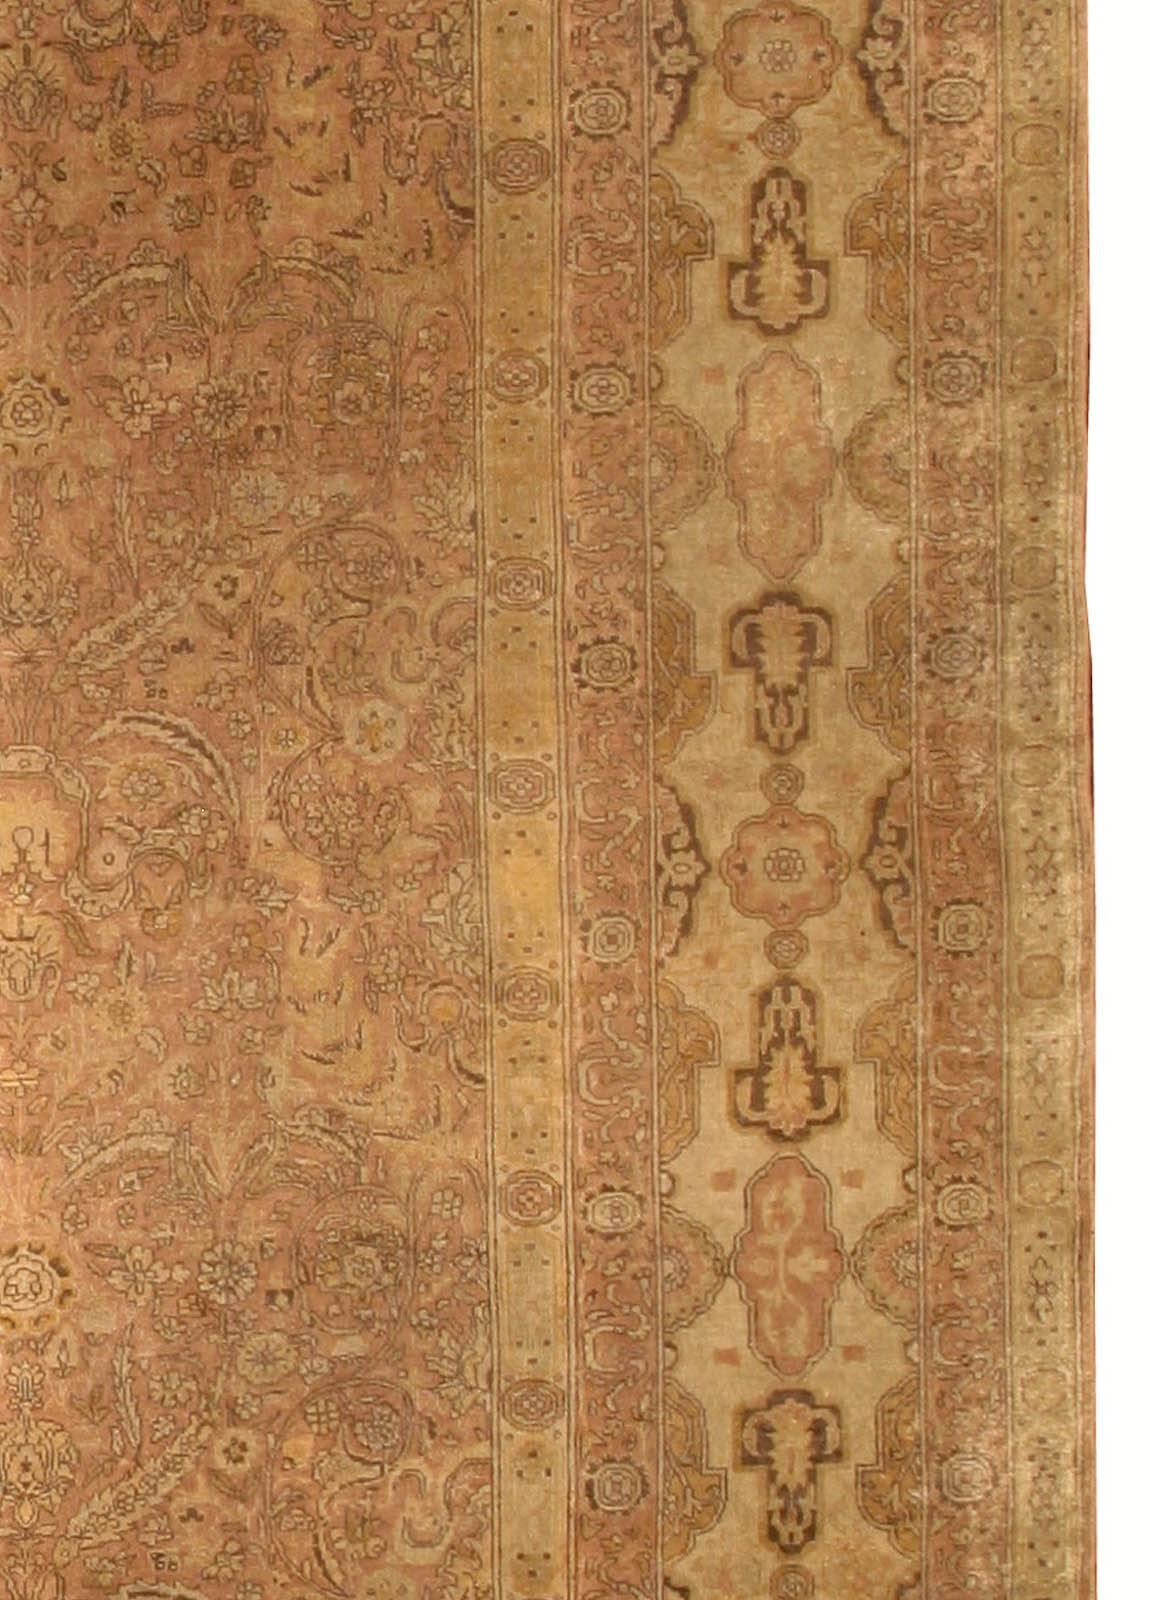 Hand-Woven Large Antique Turkish Sivas Carpet For Sale